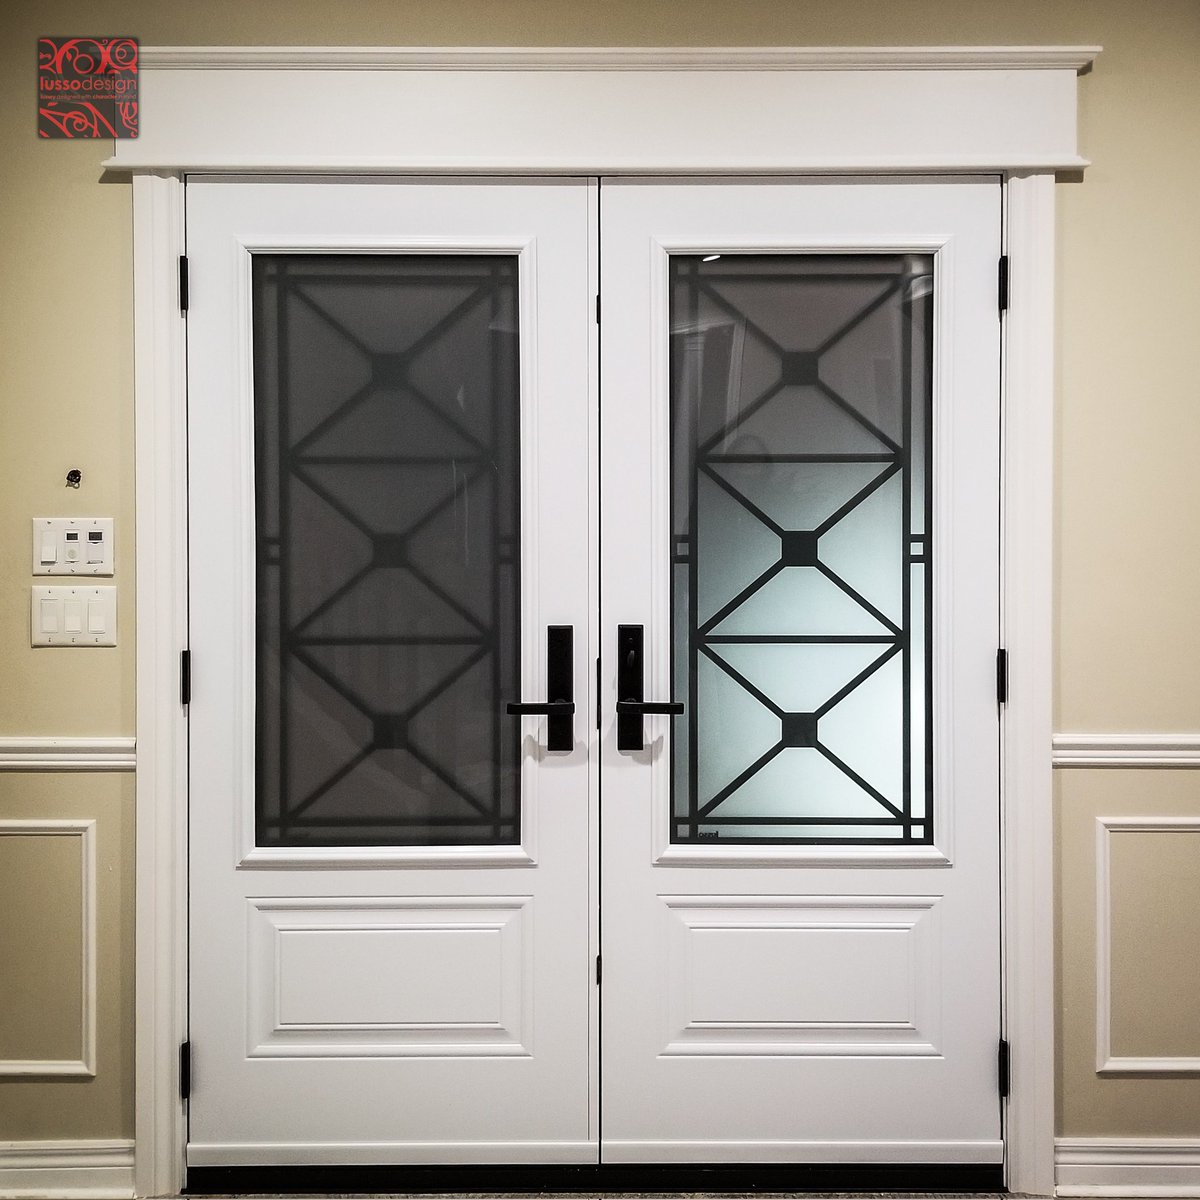 A double door with a classic 3Xs metal design #steeldoor